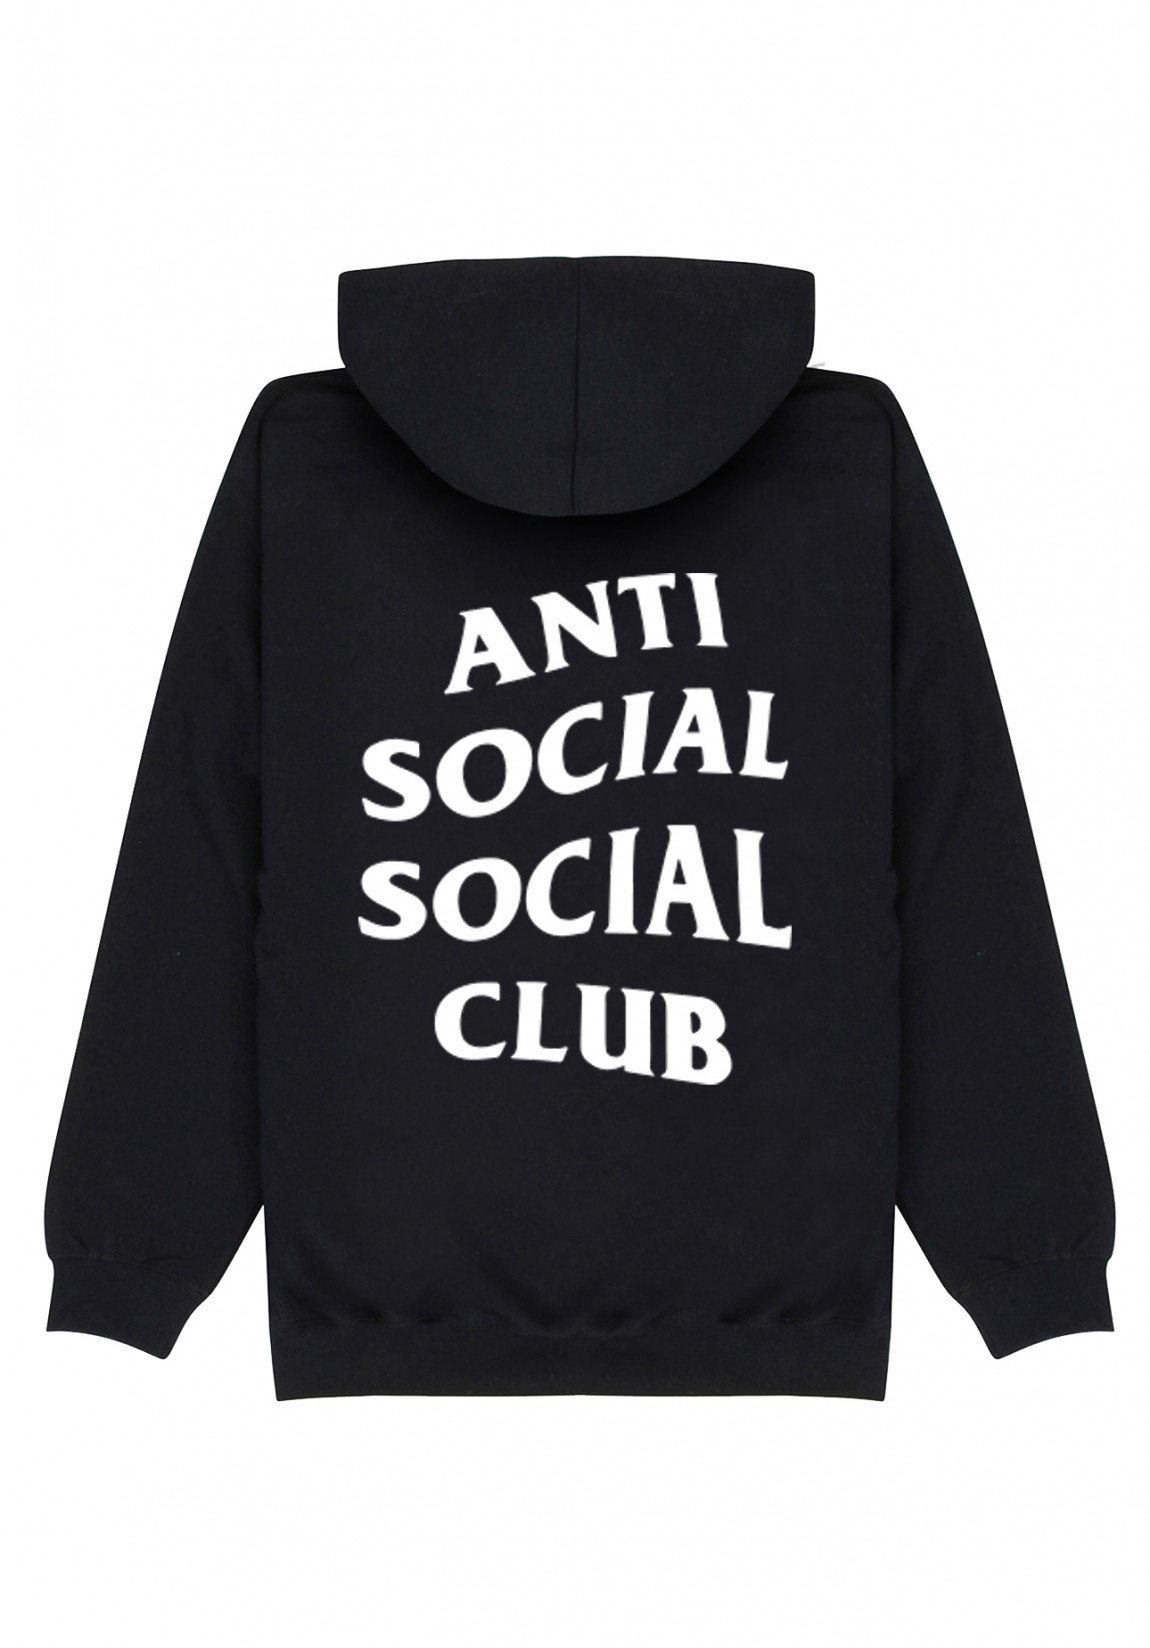 social club dll la noire gameplay